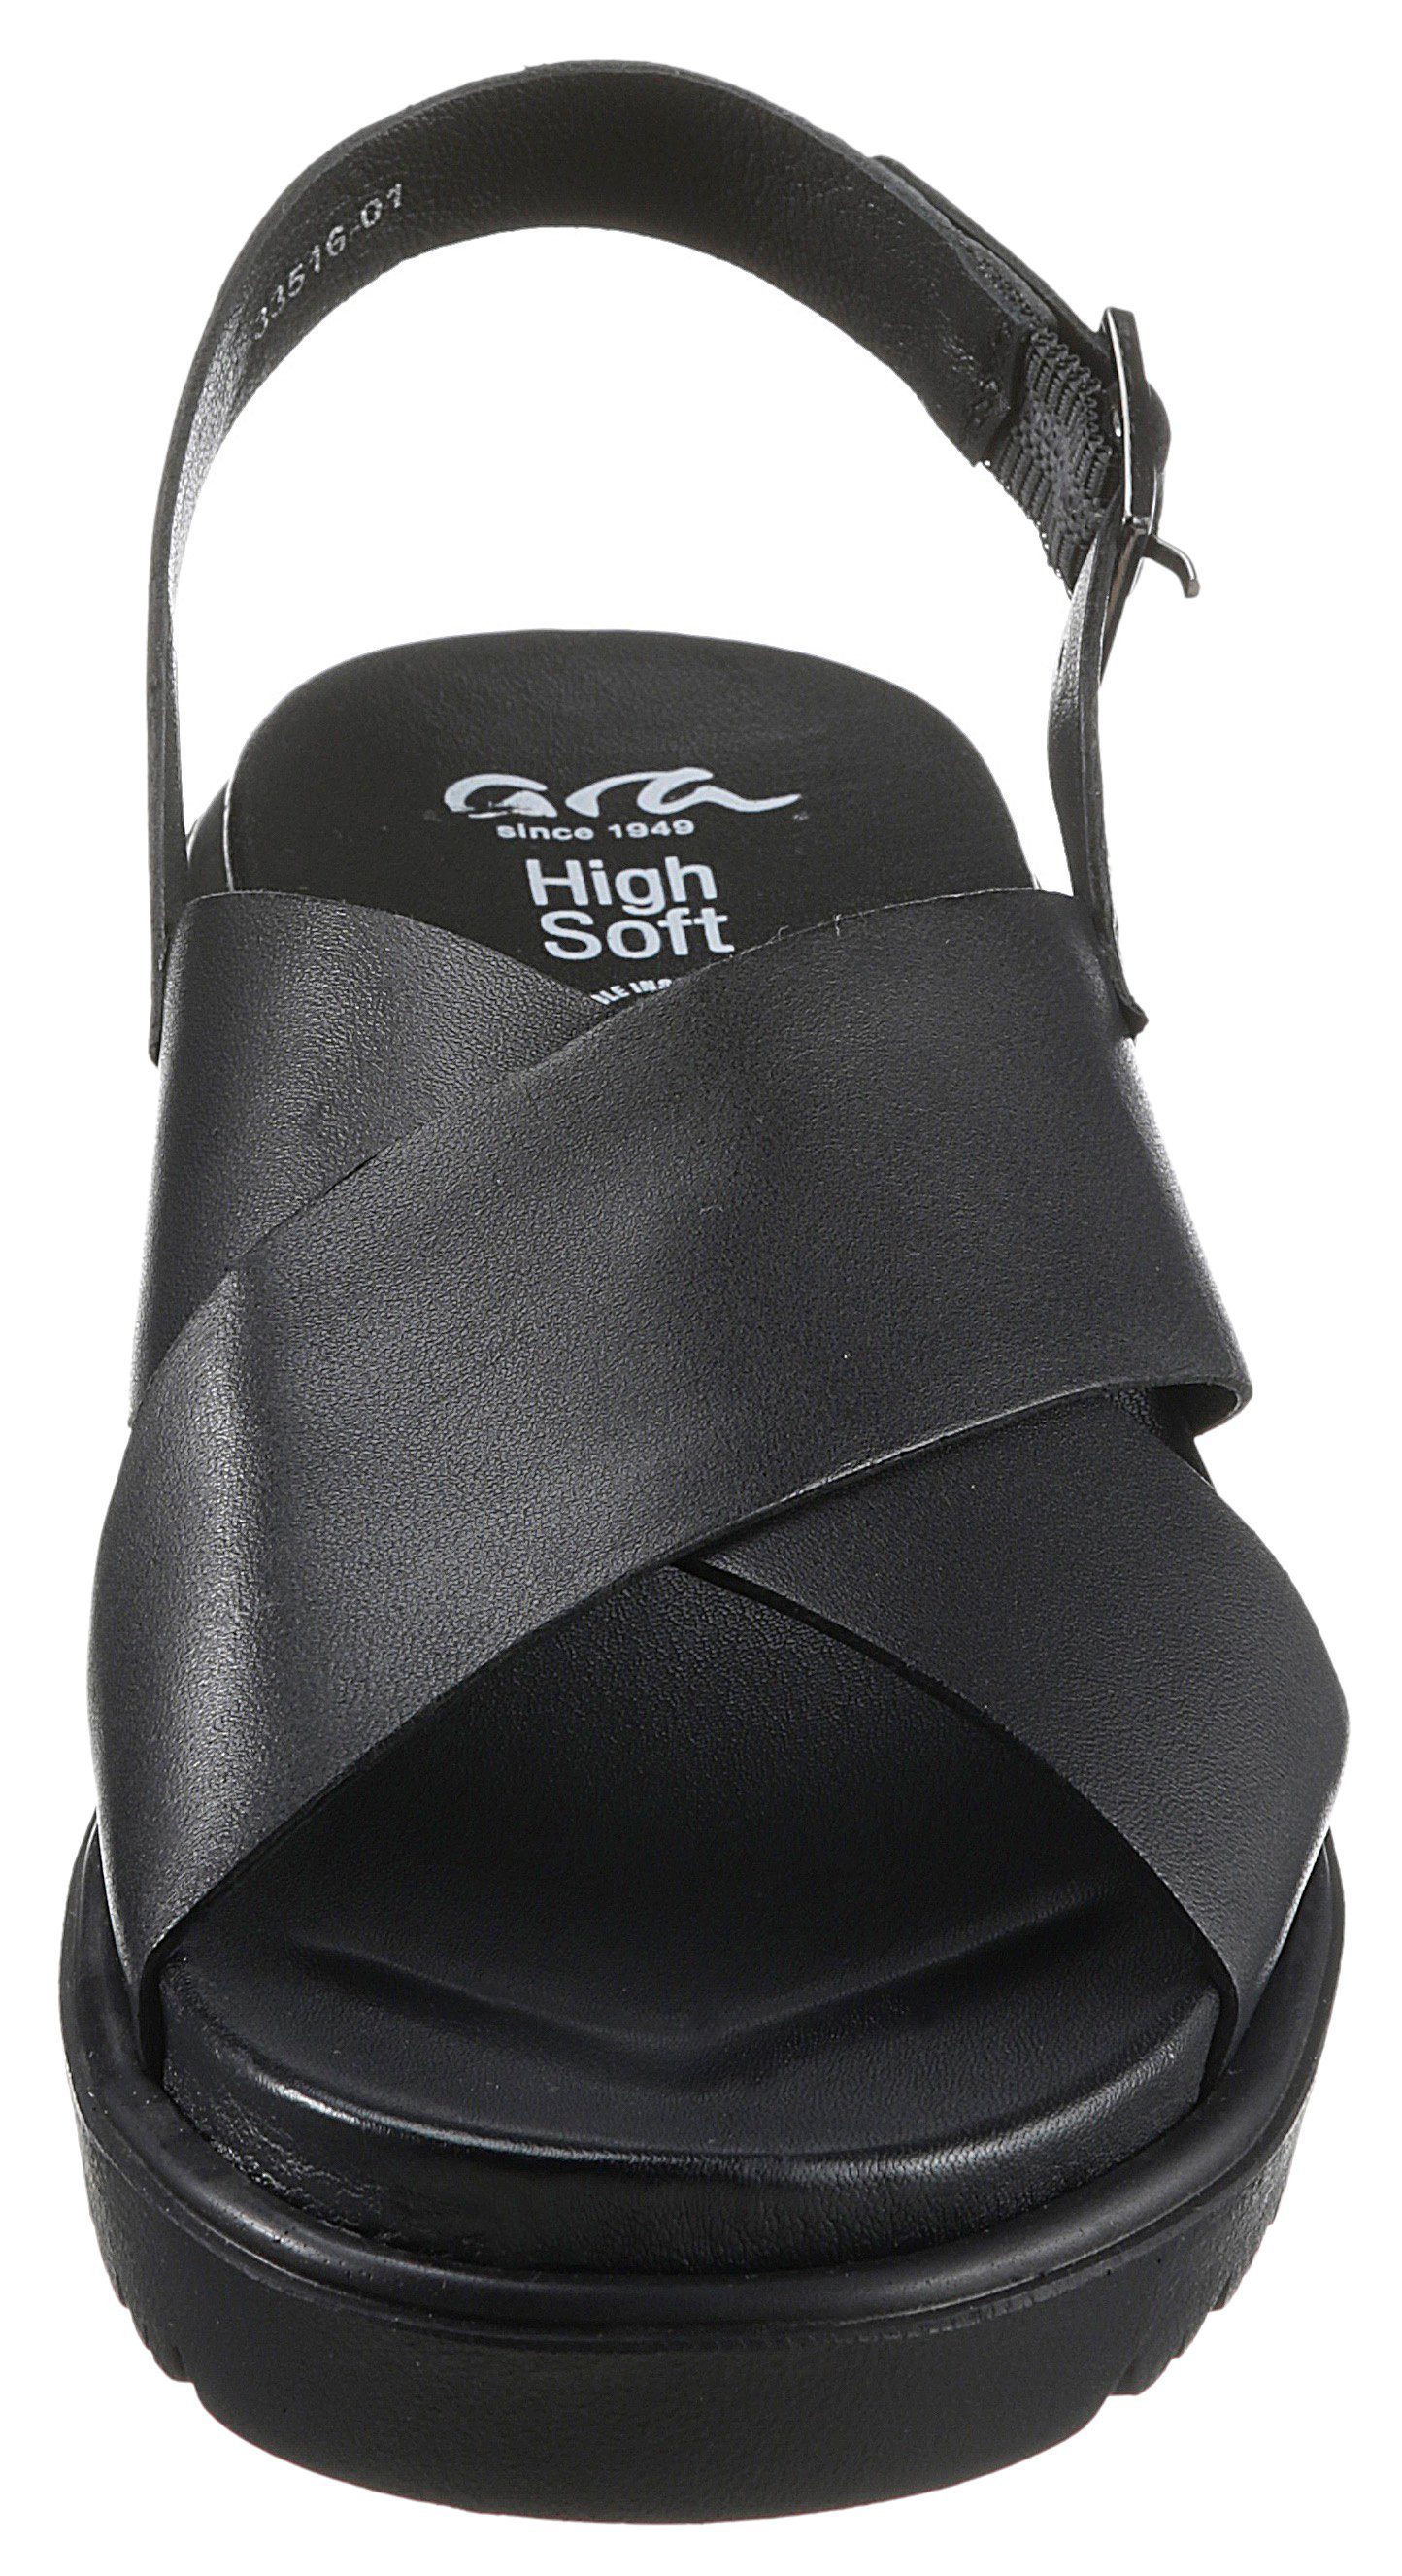 Schnalle verstellbarer BILBAO mit schwarz Ara Sandalette